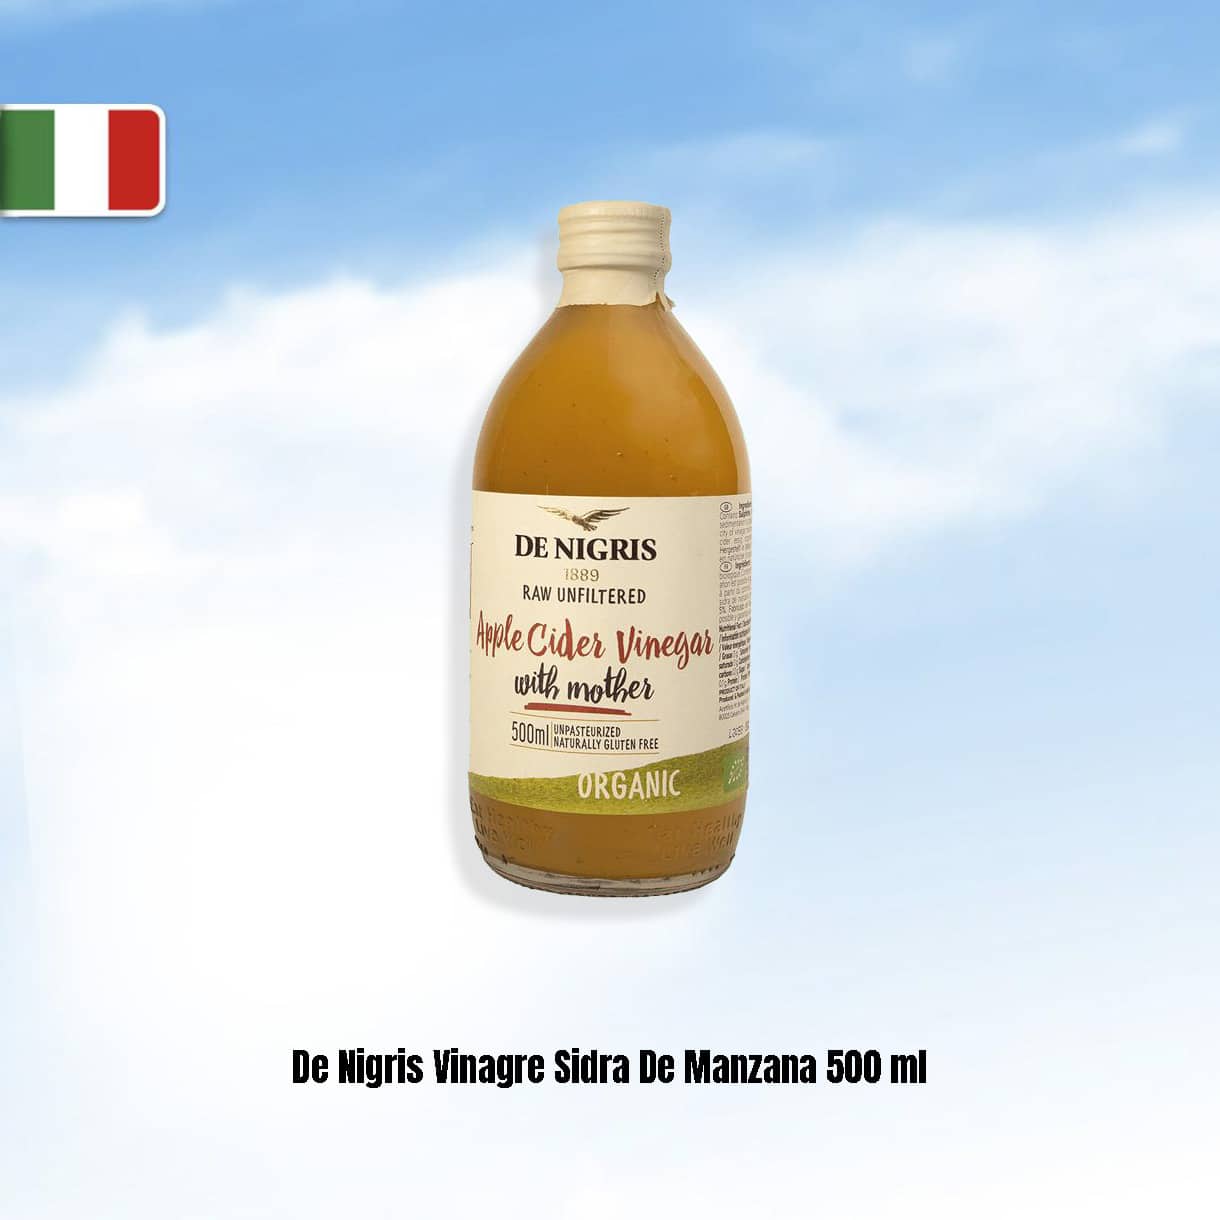 Vinagre De Nigris de sidra de manzana orgánico 500 ml